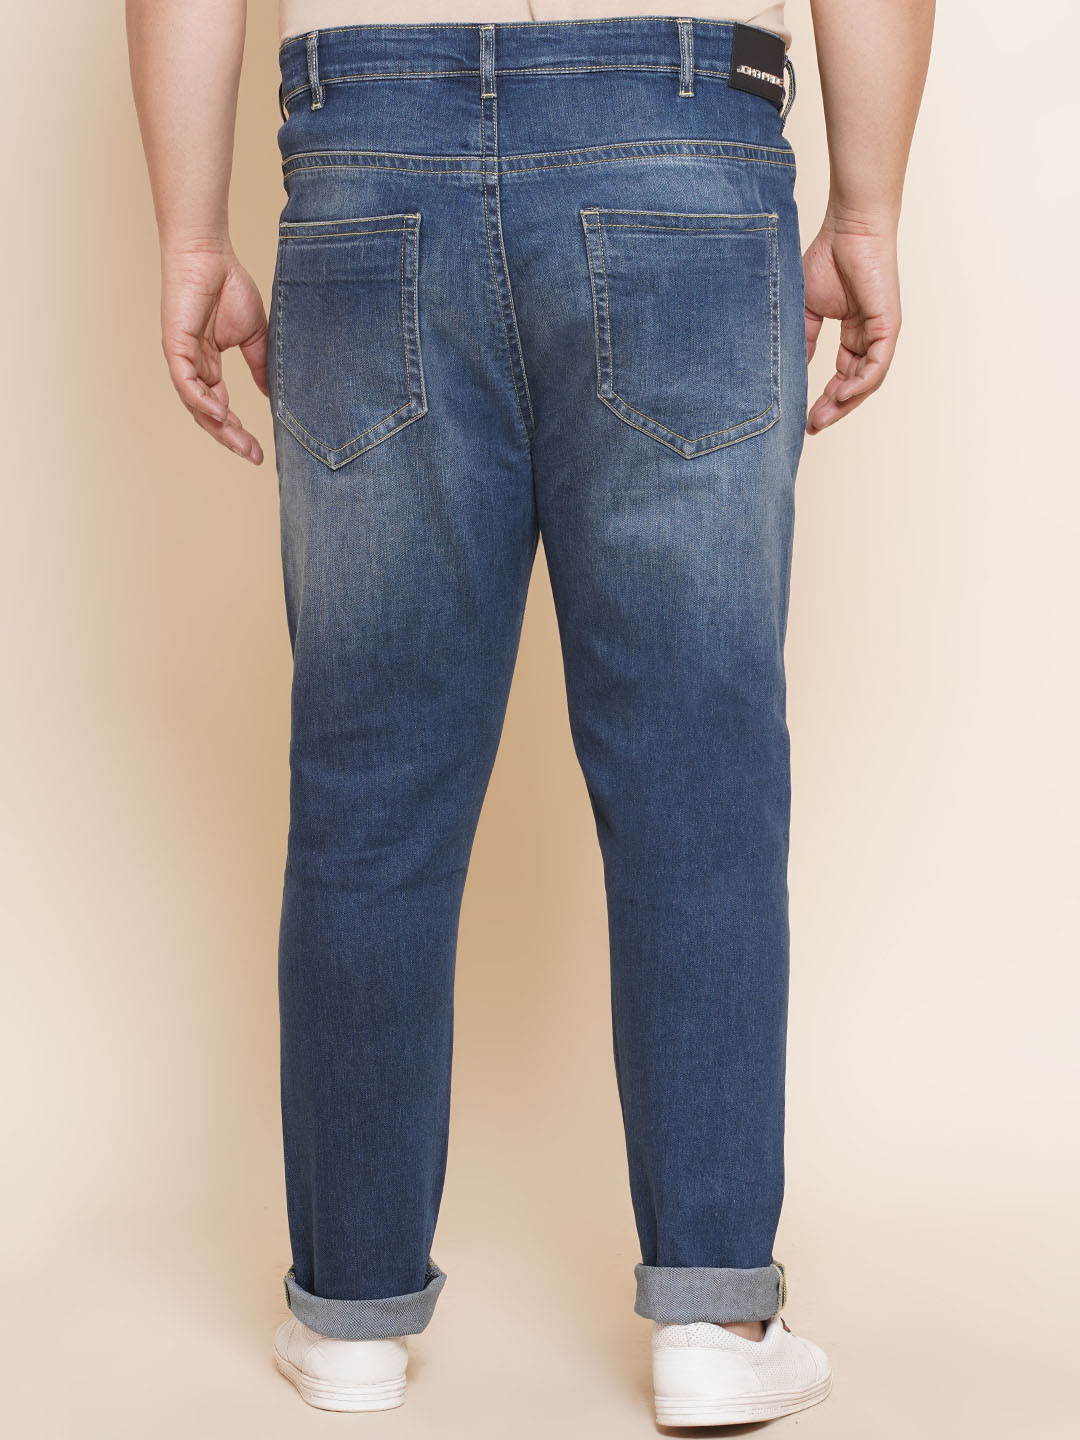 bottomwear/jeans/PJPJ6063/pjpj6063-5.jpg